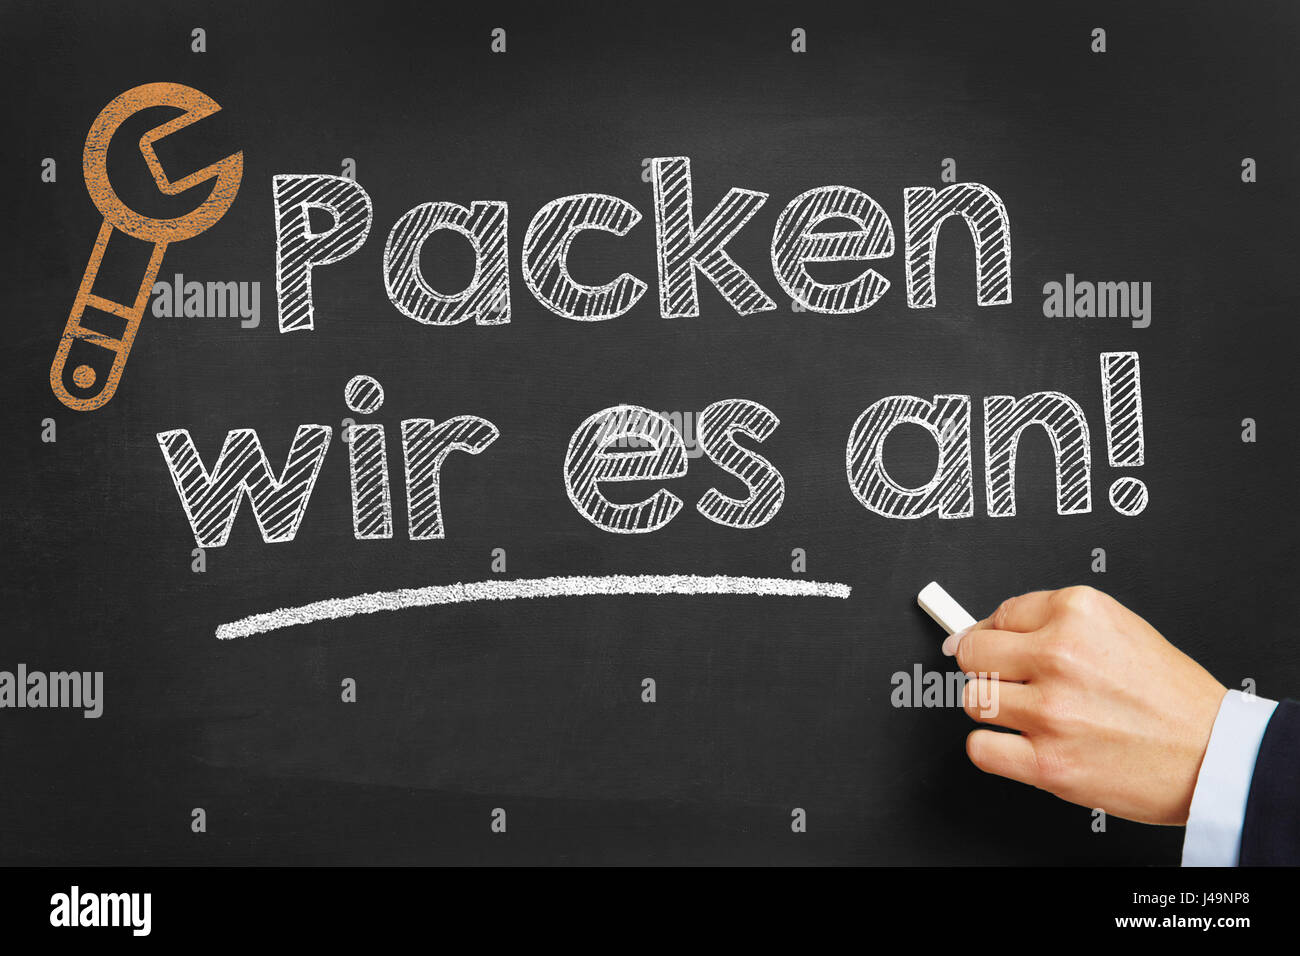 Part écrit en allemand "Packen wir es un !" (nous l'abordons) que la motivation on chalkboard Banque D'Images